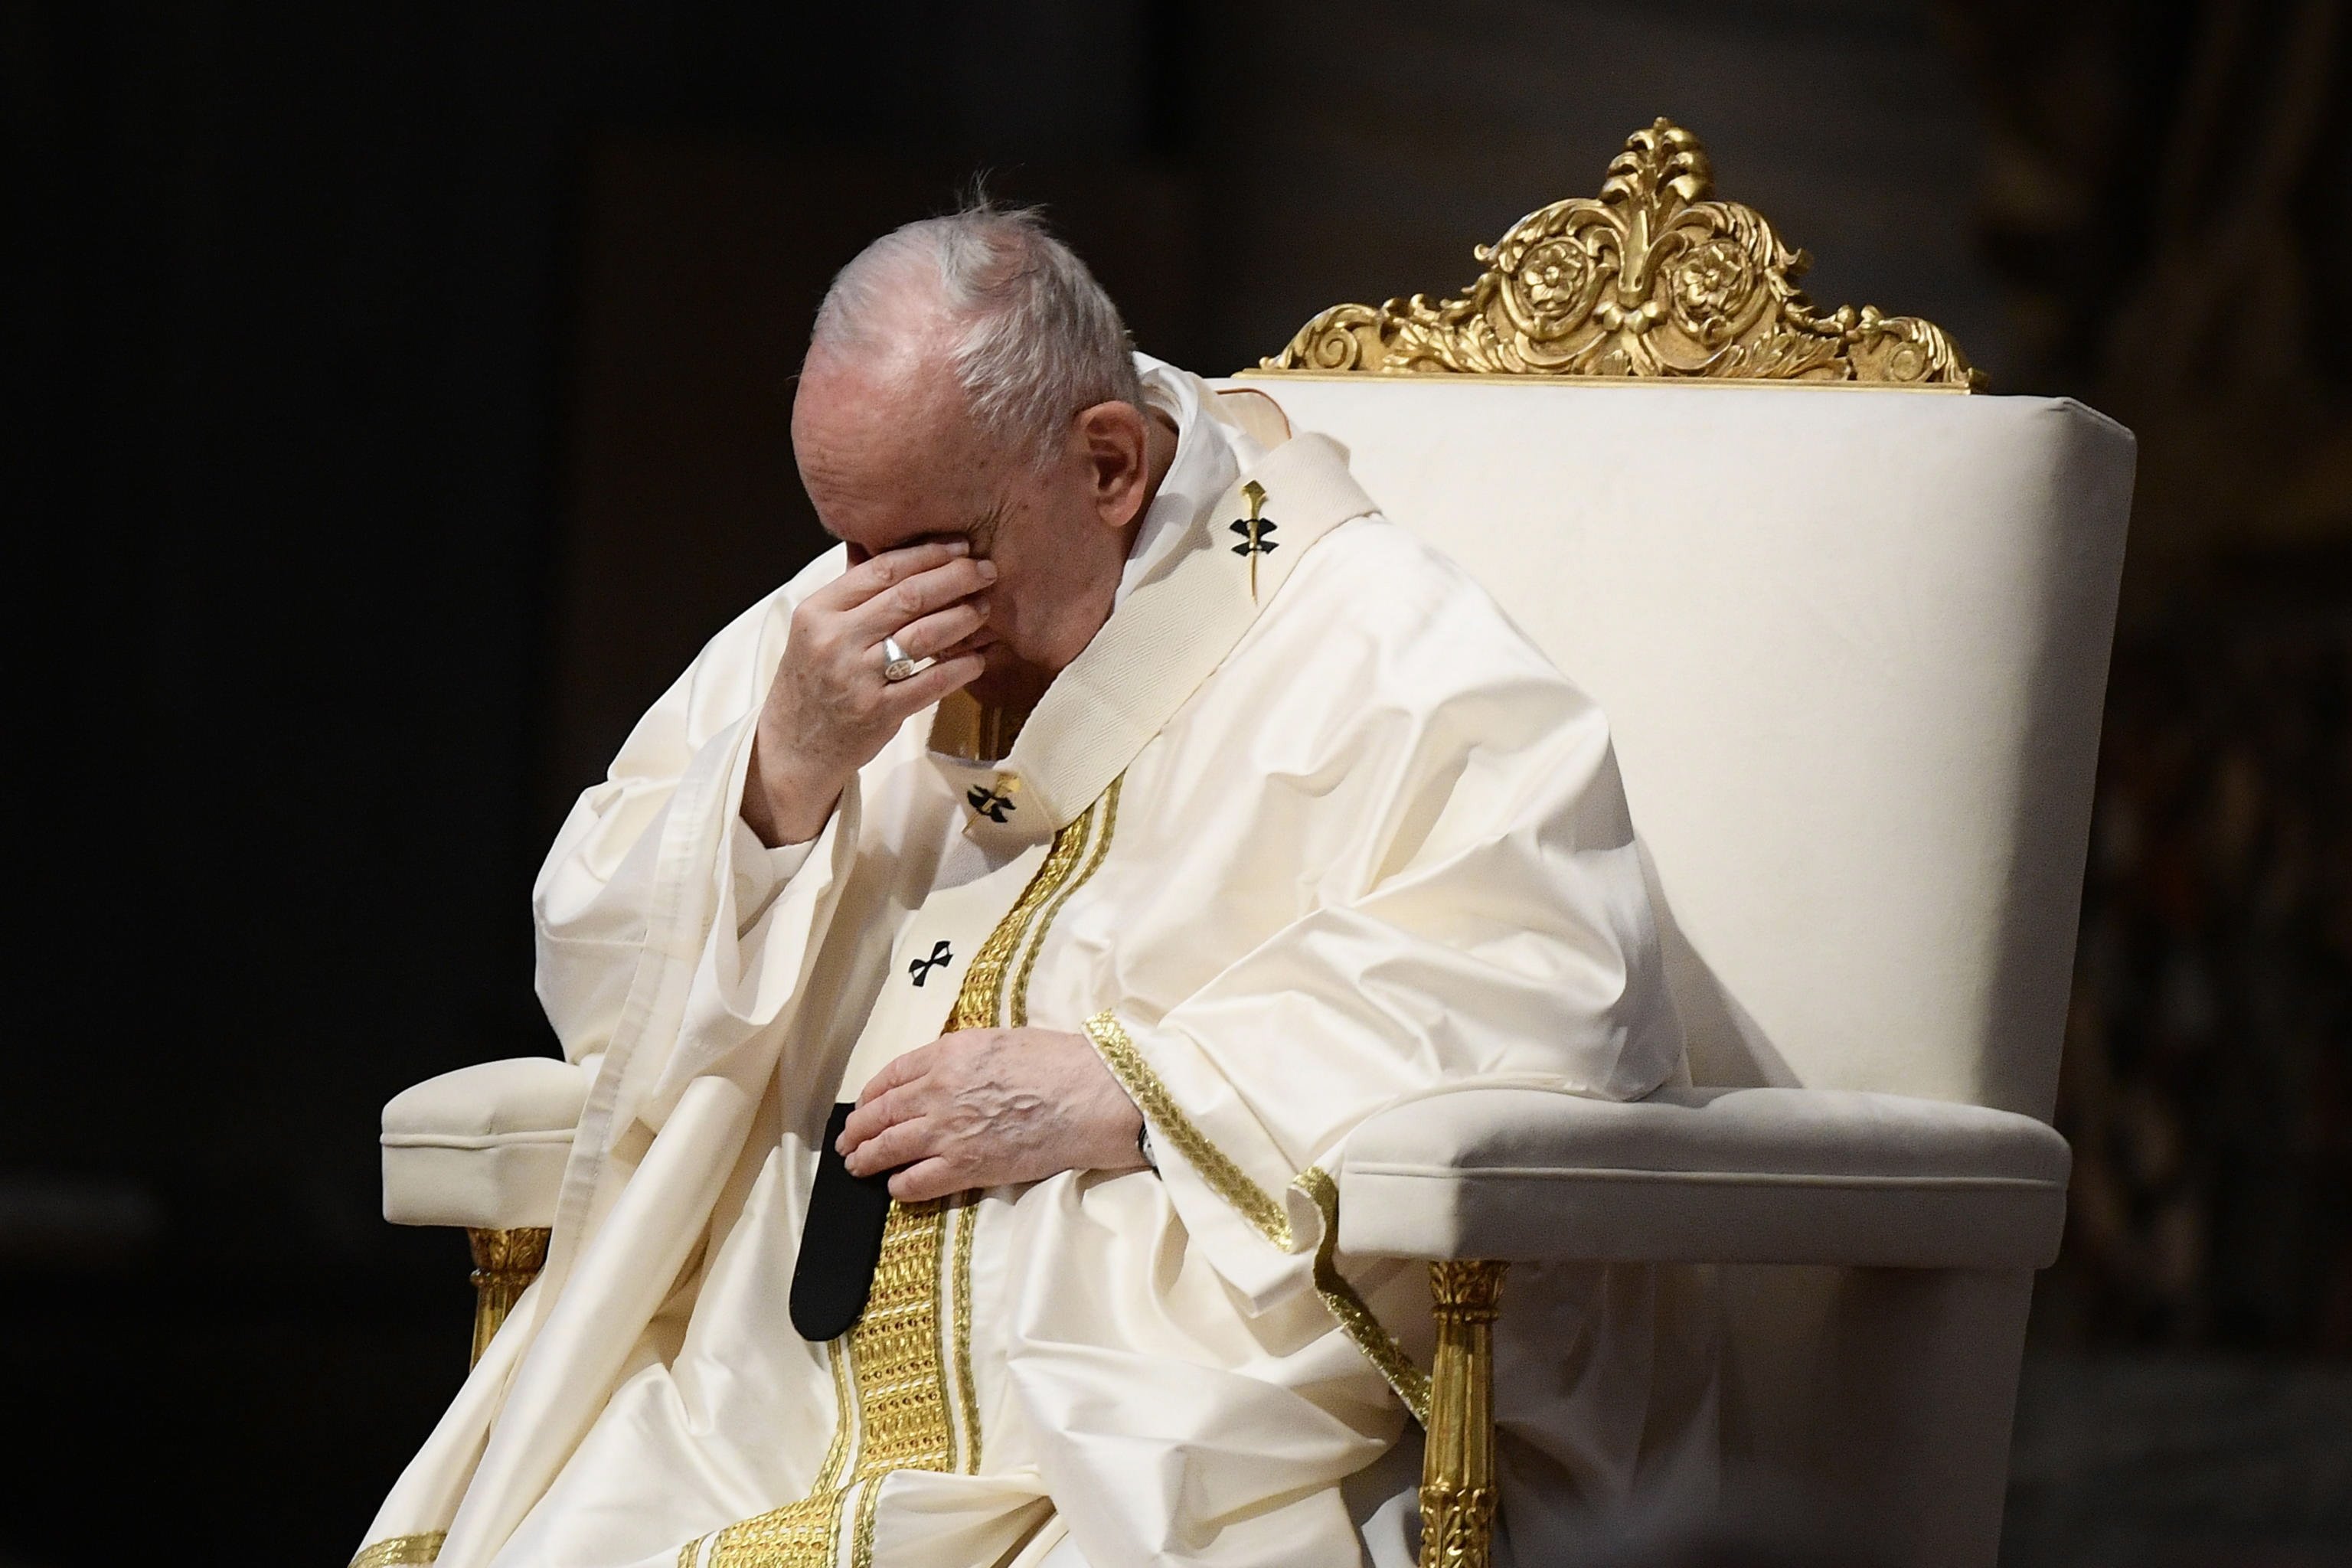 El Papa i els abusos sexuals a l'Església francesa: "És el moment de la vergonya"